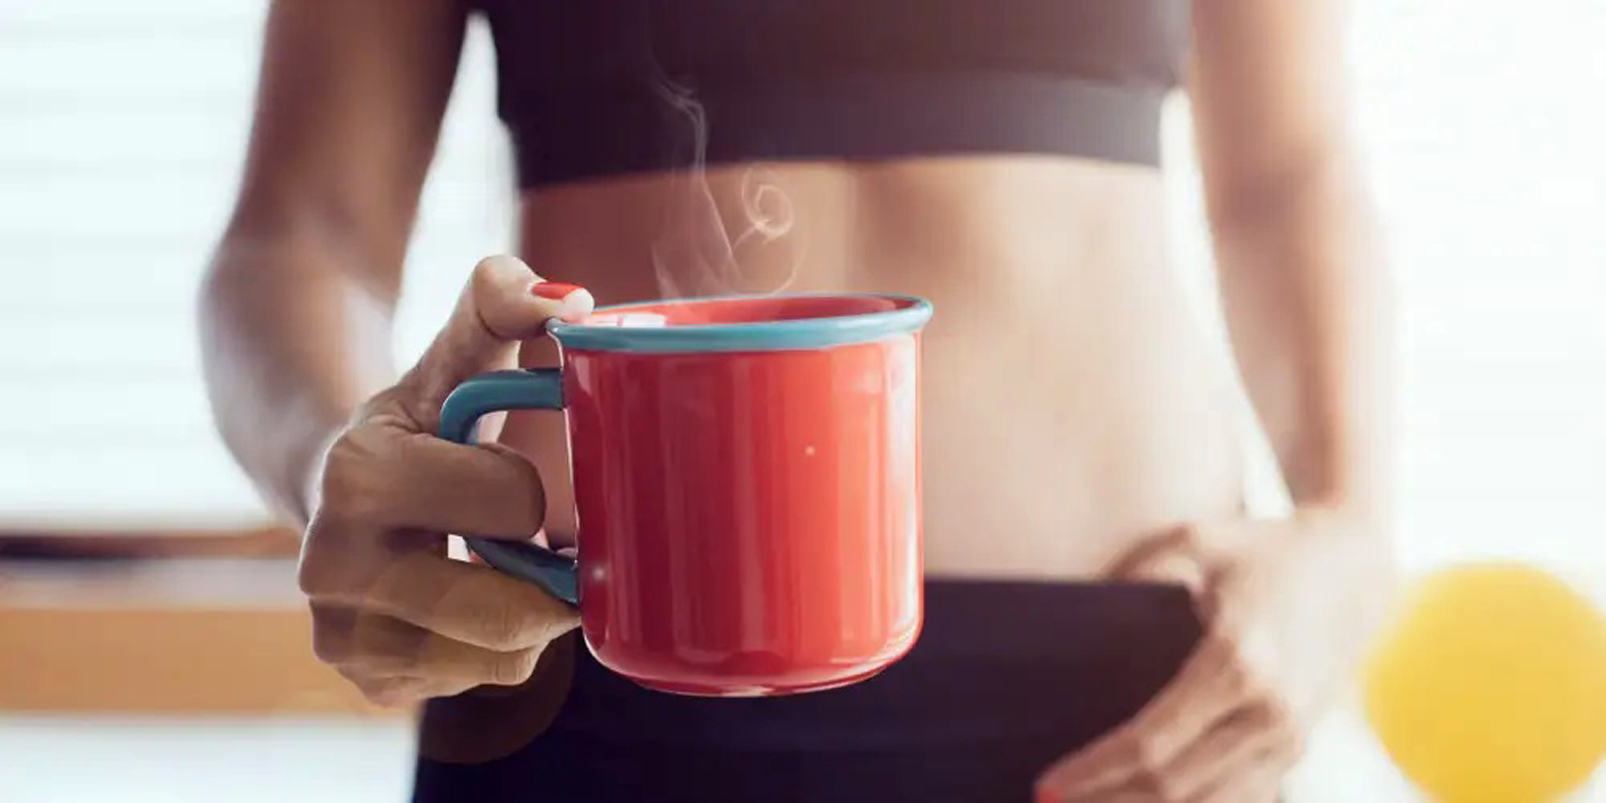 Thói quen uống 1-2 tách cà phê mỗi ngày có thể giúp bảo vệ sức khỏe nếu được thực hiện đúng cách - ẢNH: GETTY IMAGES